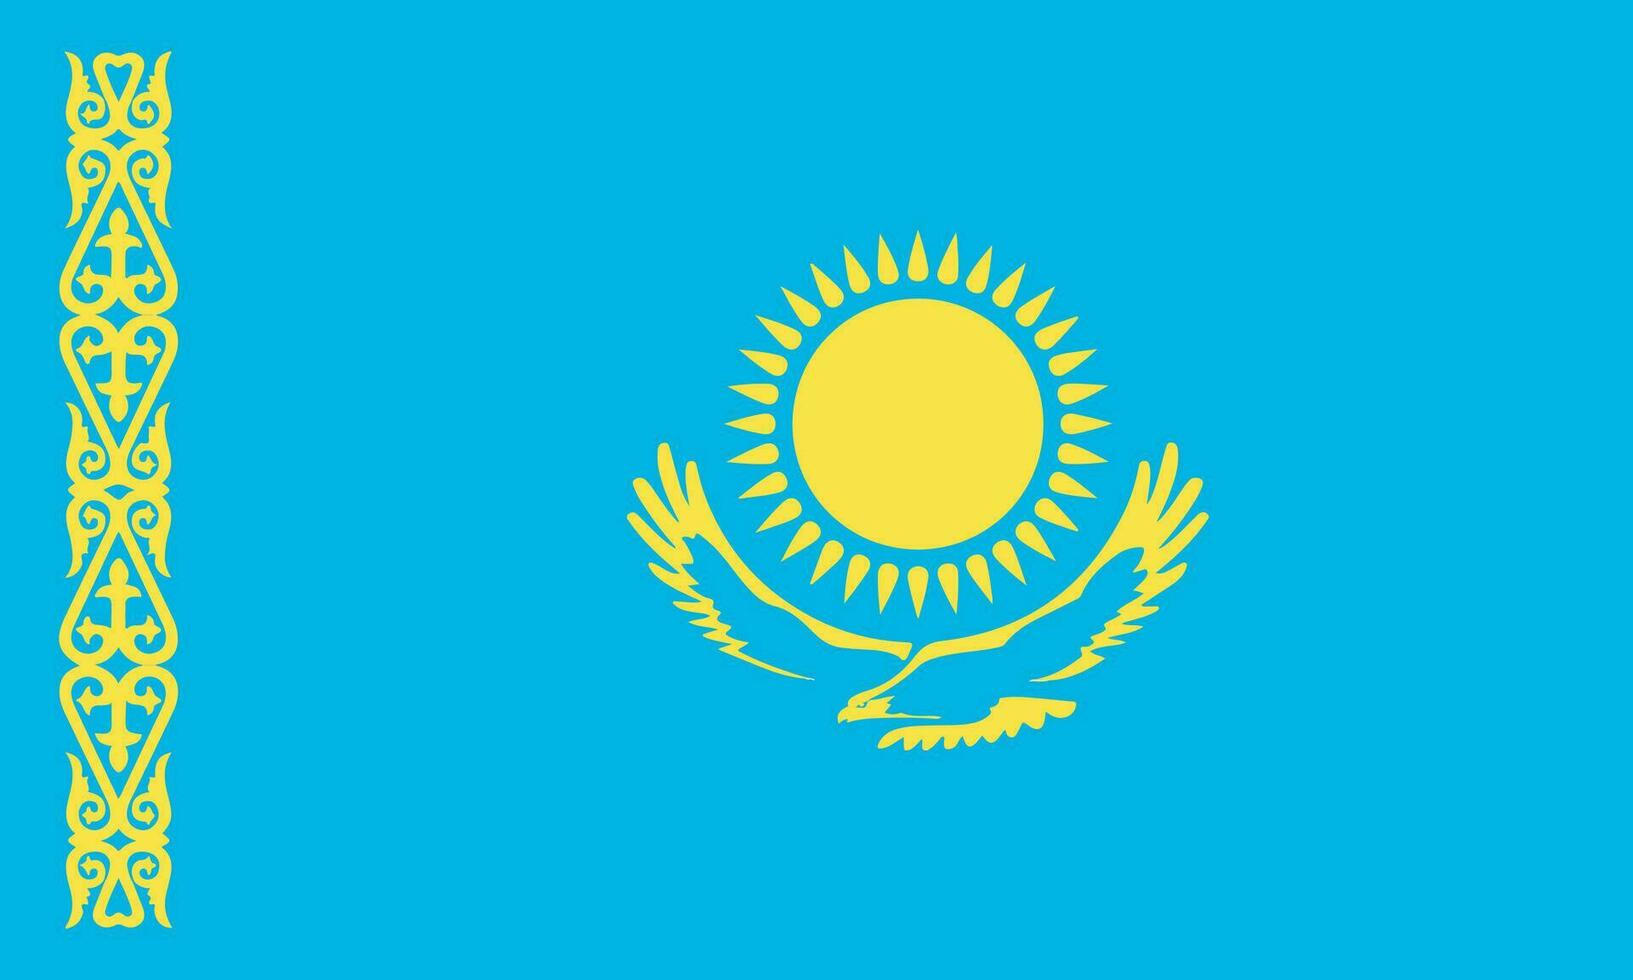 nationaal Kazachstan vlag, officieel kleuren, en proporties. vector illustratie. eps 10 vector.